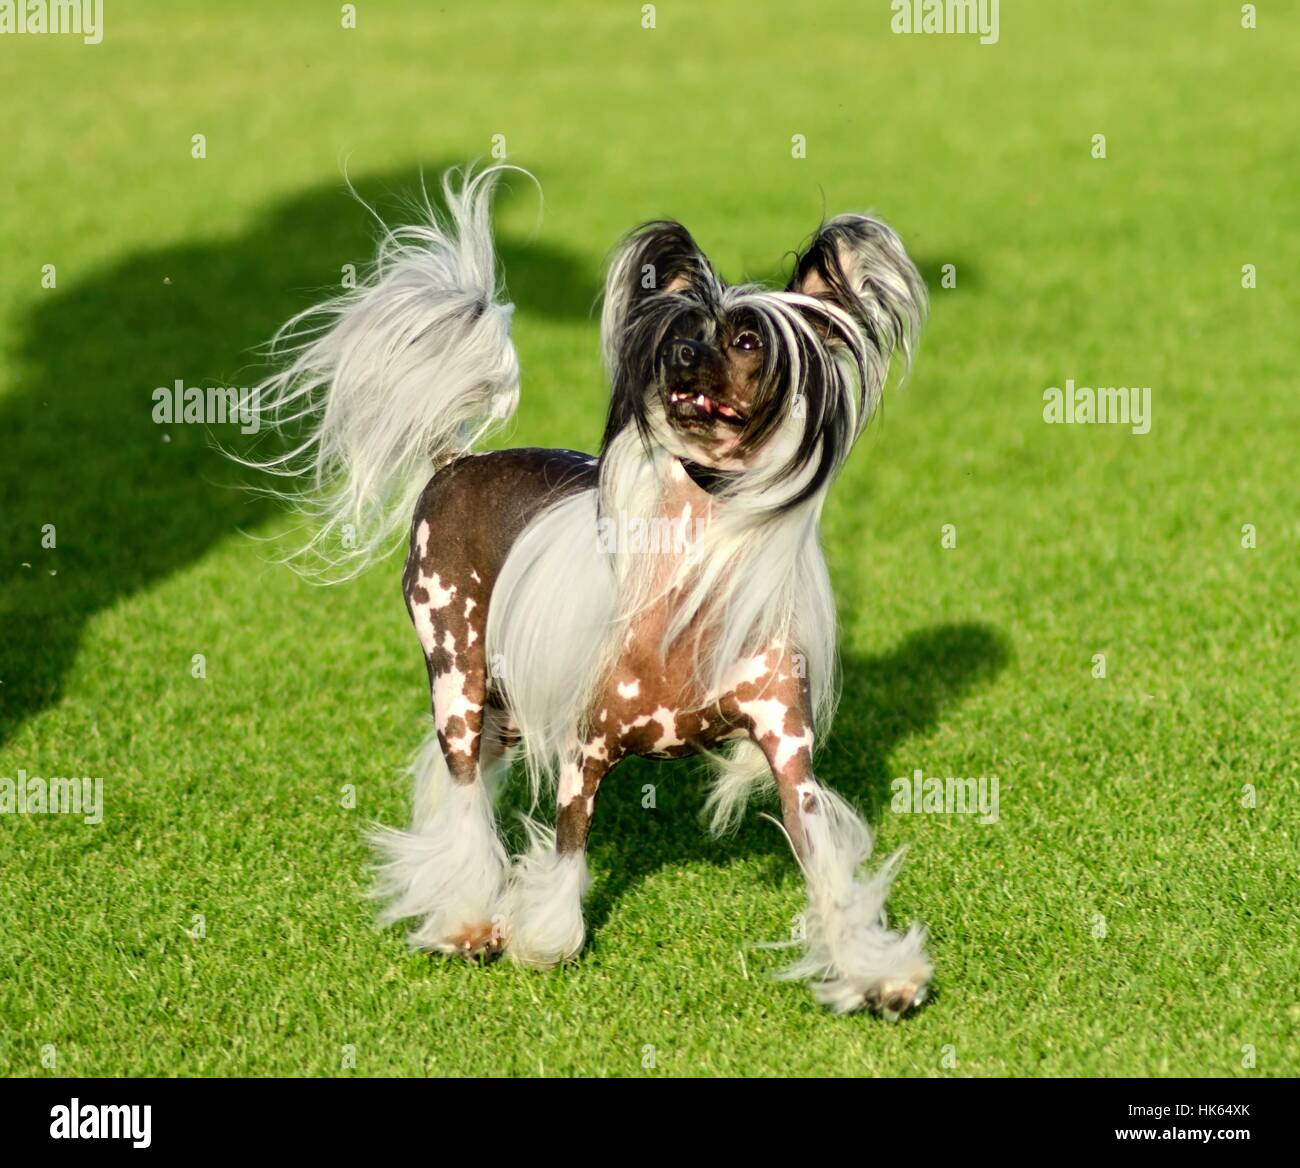 kleine, winzige, kleine, kurze, Hund, Chinesisch, haarlose, reinrassige, wunderschöne, Stockfoto